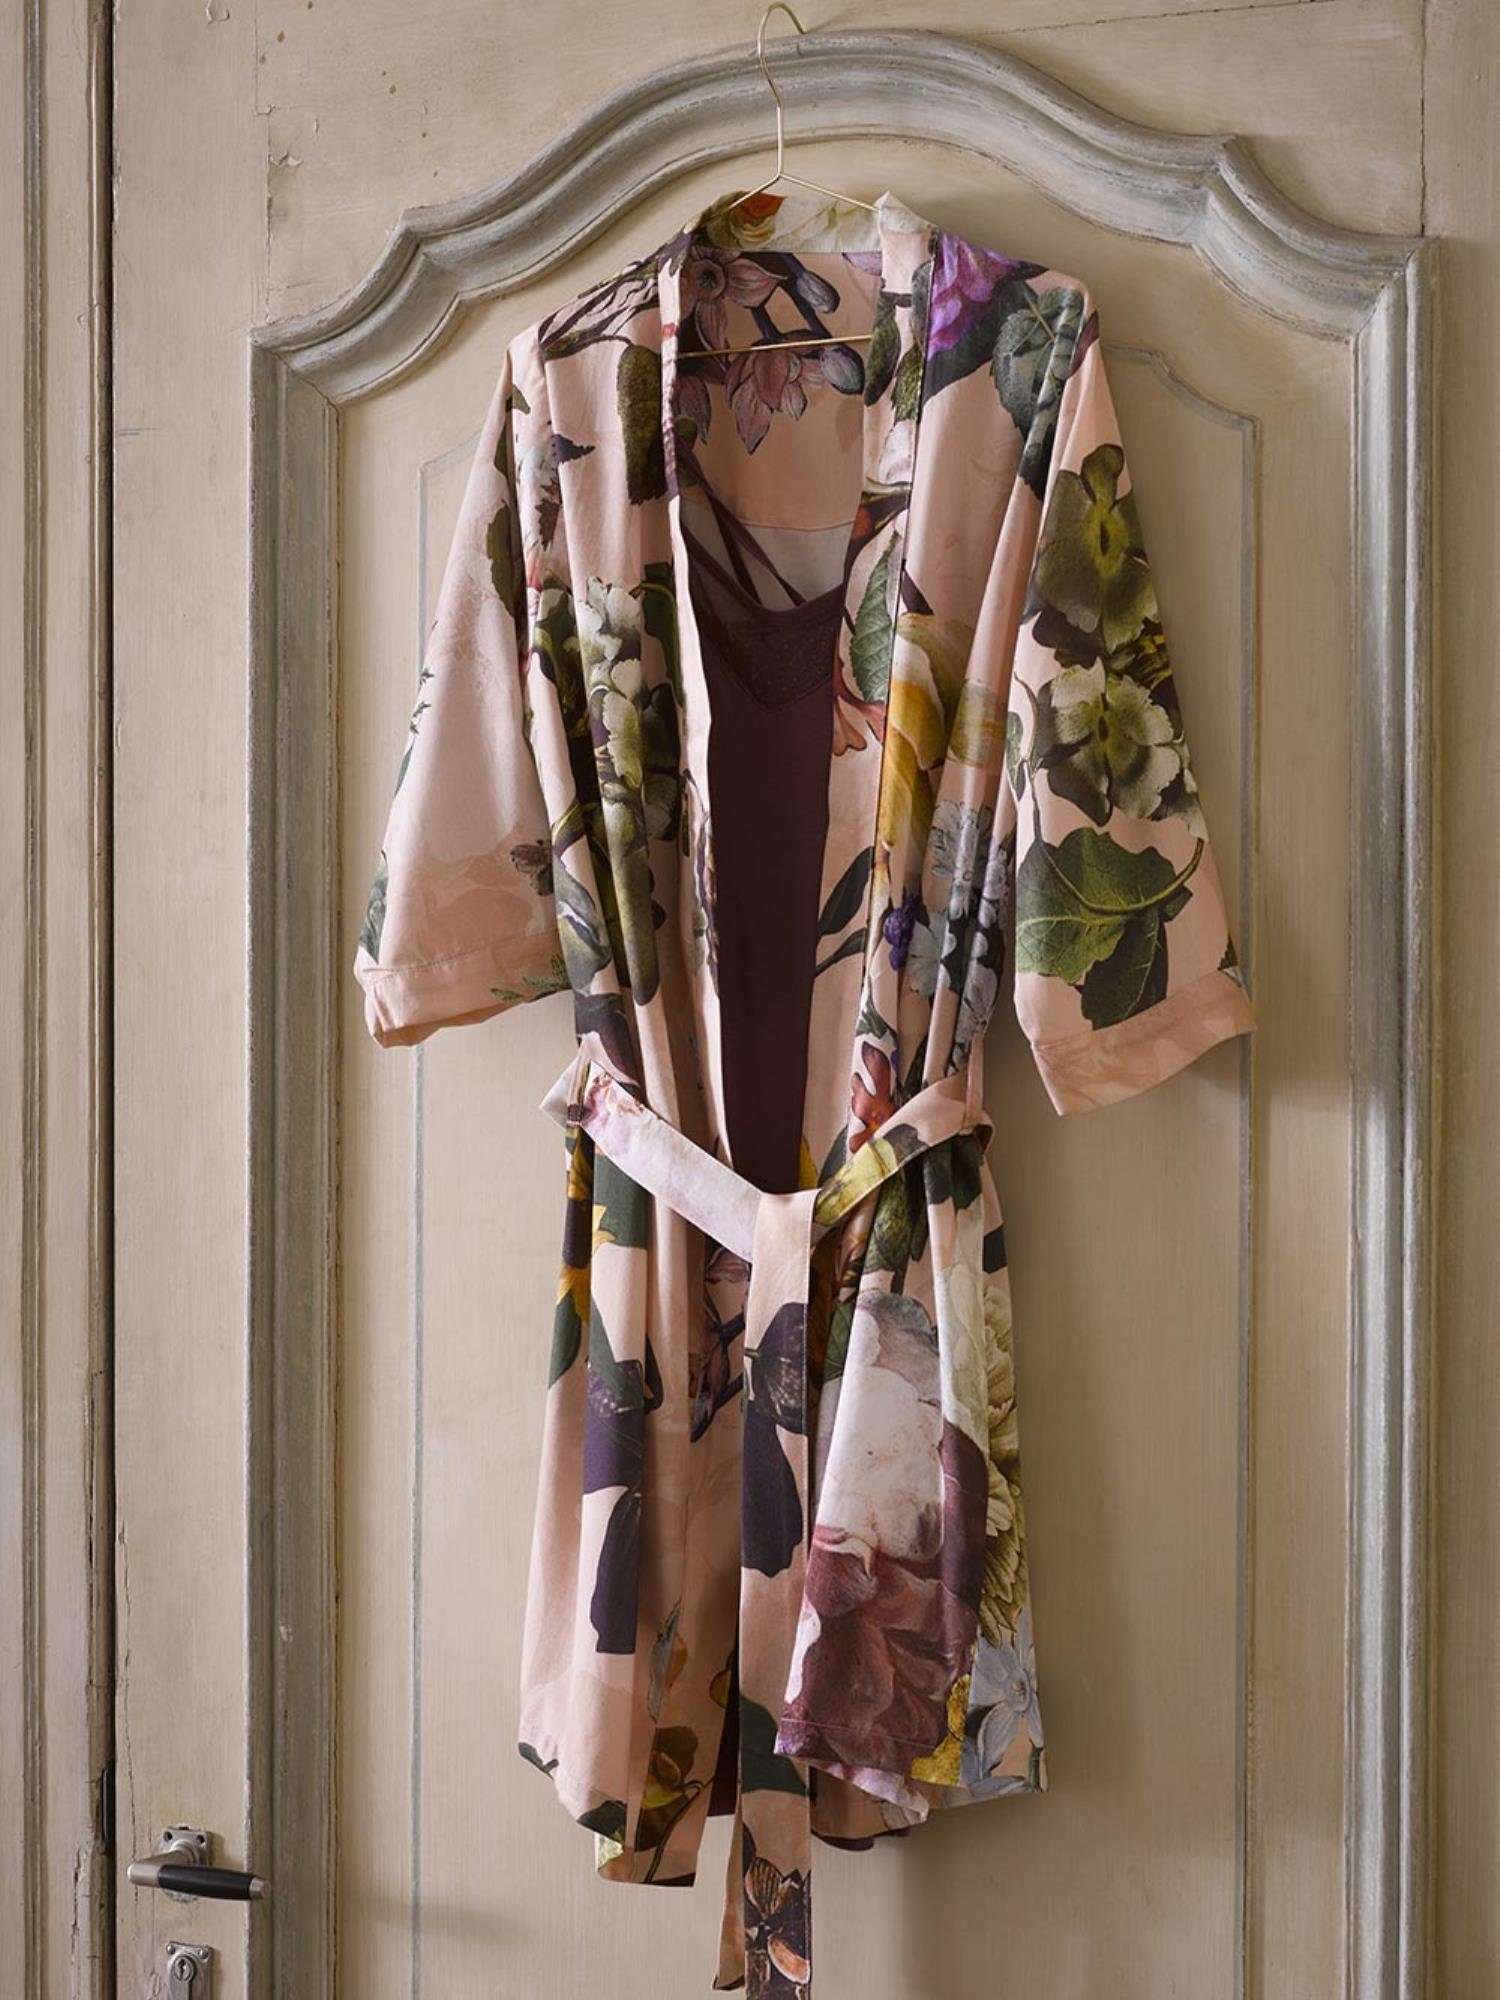 Kurzform, Baumwolle, Kimono Rose Fleur, Gürtel, Kimono-Kragen, Blumenprint Essenza wunderschönem mit